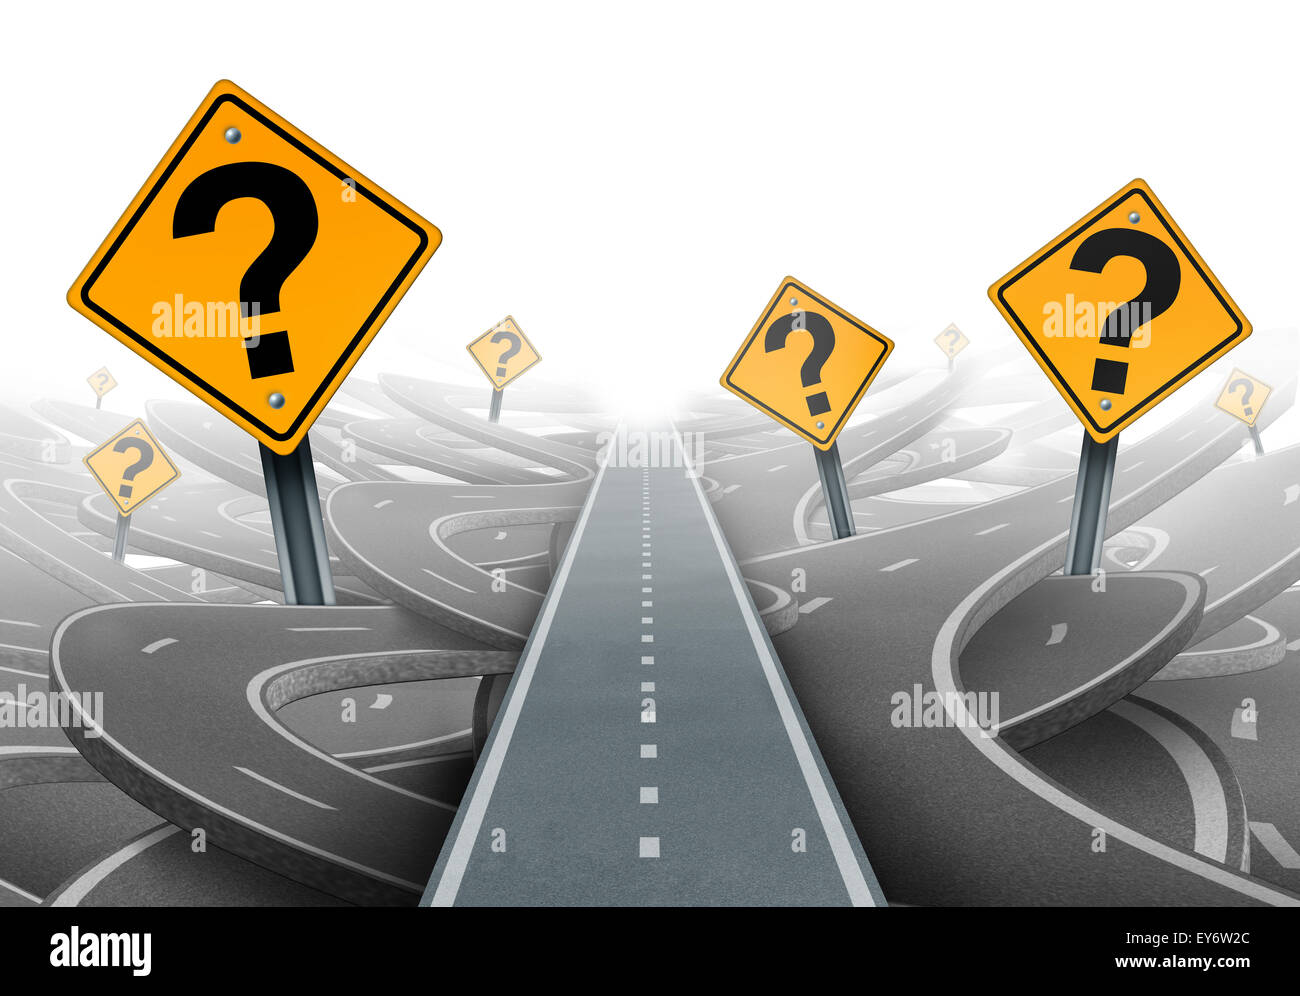 Lösung und Strategie Weg Fragen und klare Planung für Ideen in Unternehmensführung mit ein gerader Weg zum Erfolg, die Wahl des richtigen strategischen Plans mit gelben Verkehrszeichen schneiden durch ein Labyrinth von Autobahnen. Stockfoto